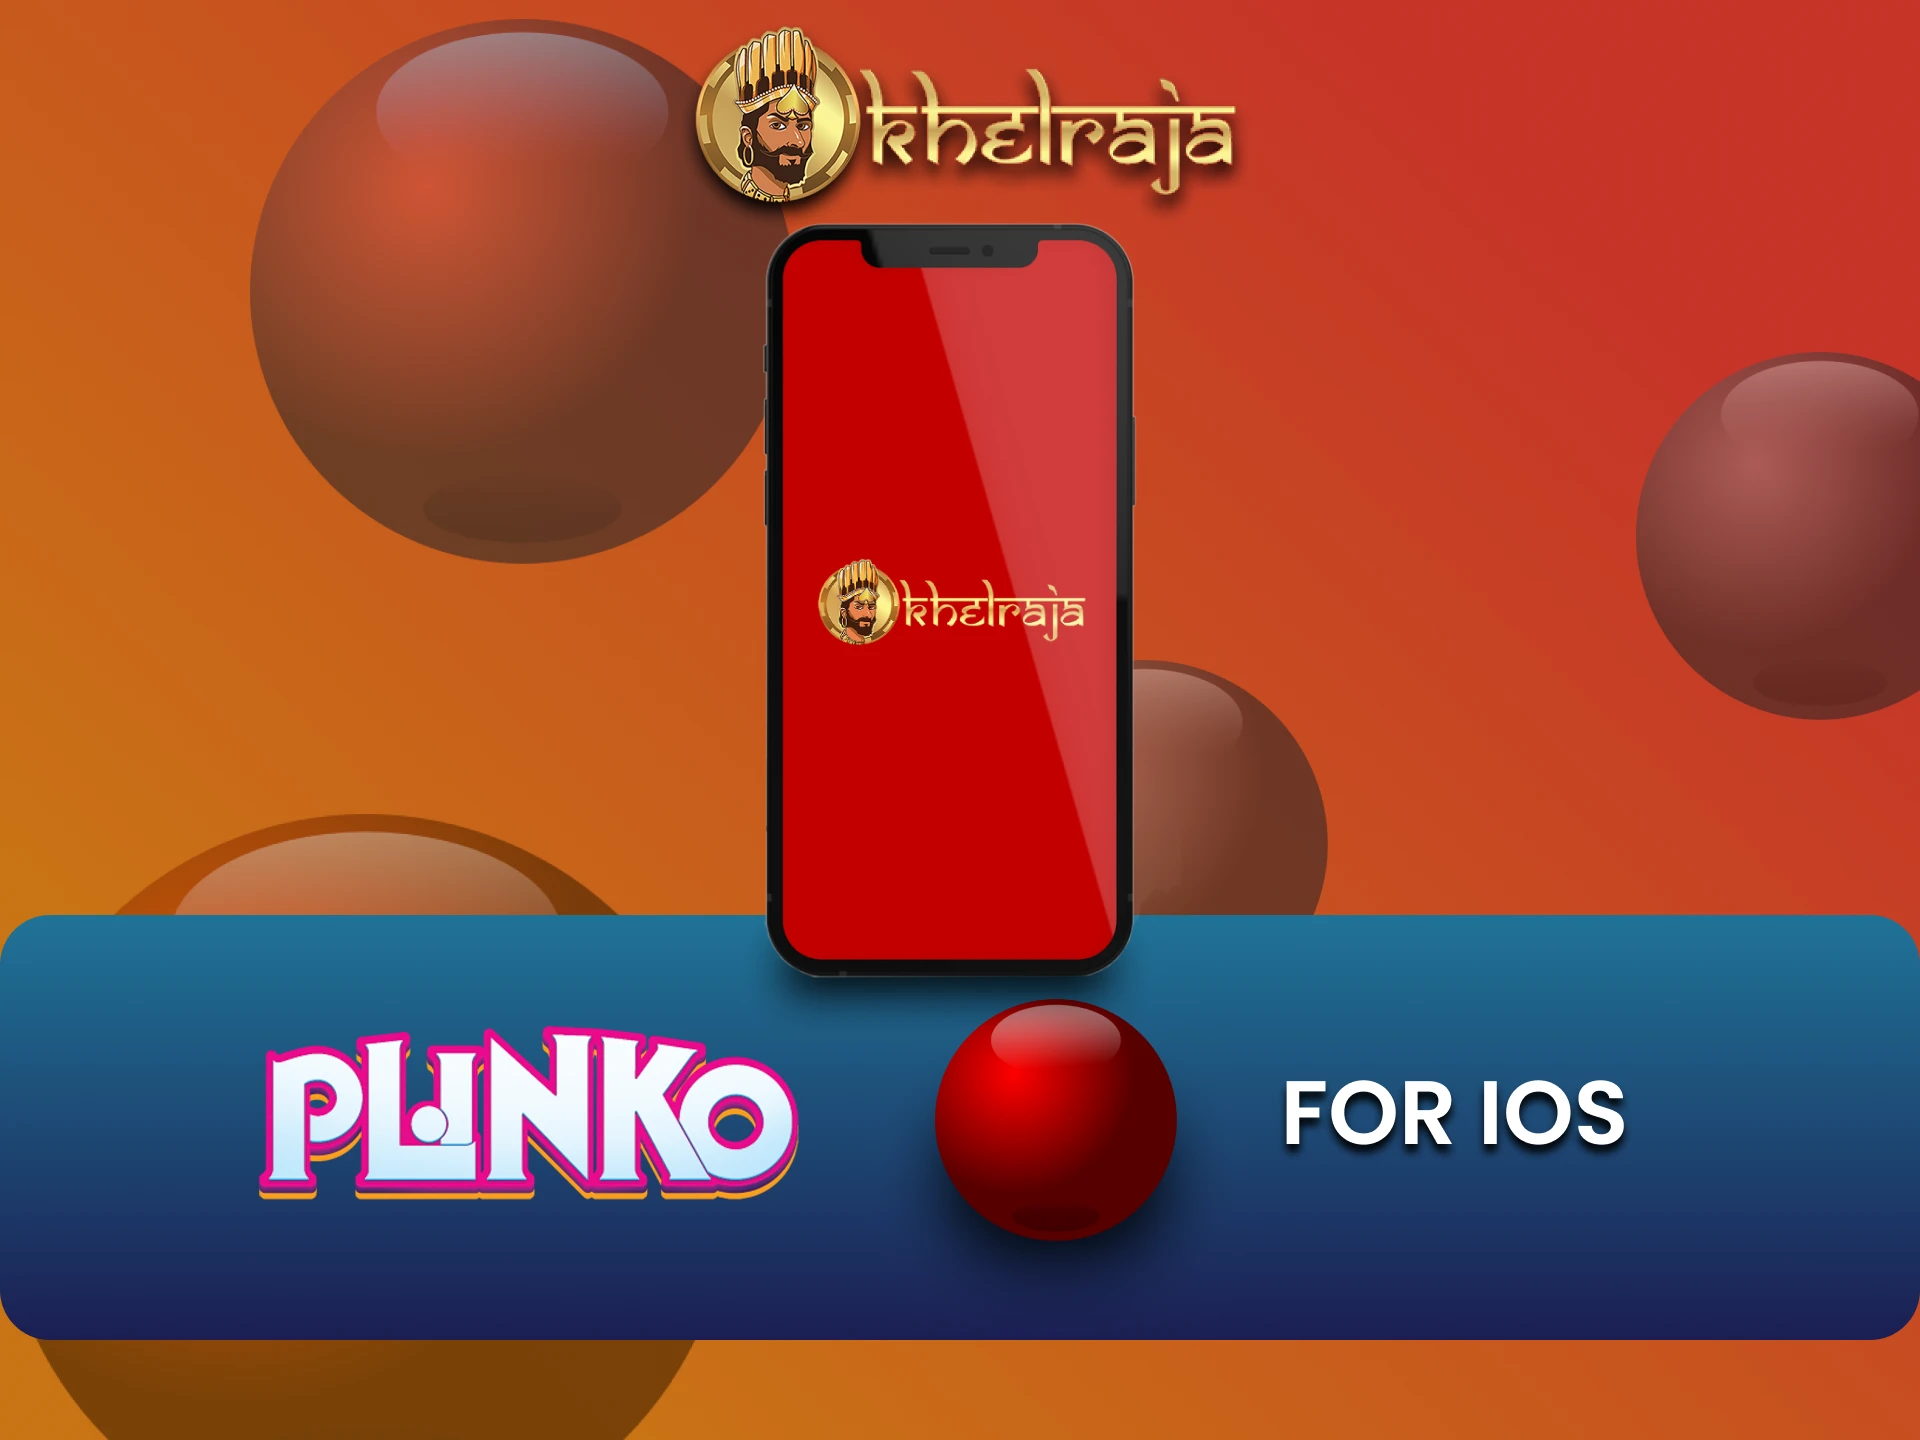 To play Plinko, download the Khelraja app on iOS.